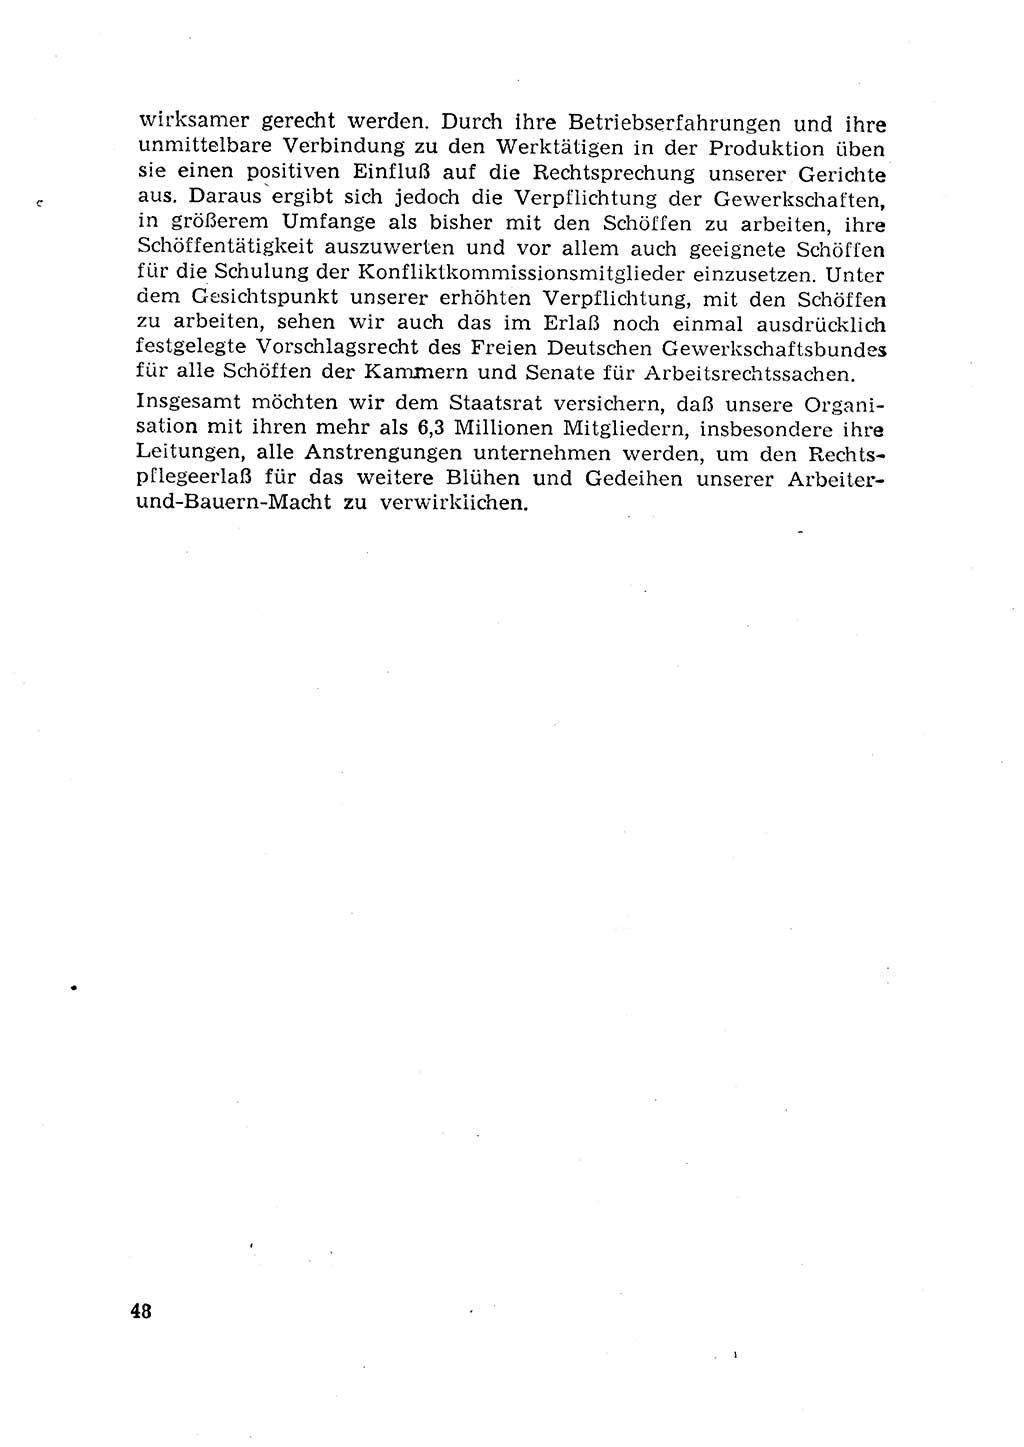 Rechtspflegeerlaß [Deutsche Demokratische Republik (DDR)] 1963, Seite 48 (R.-Pfl.-Erl. DDR 1963, S. 48)